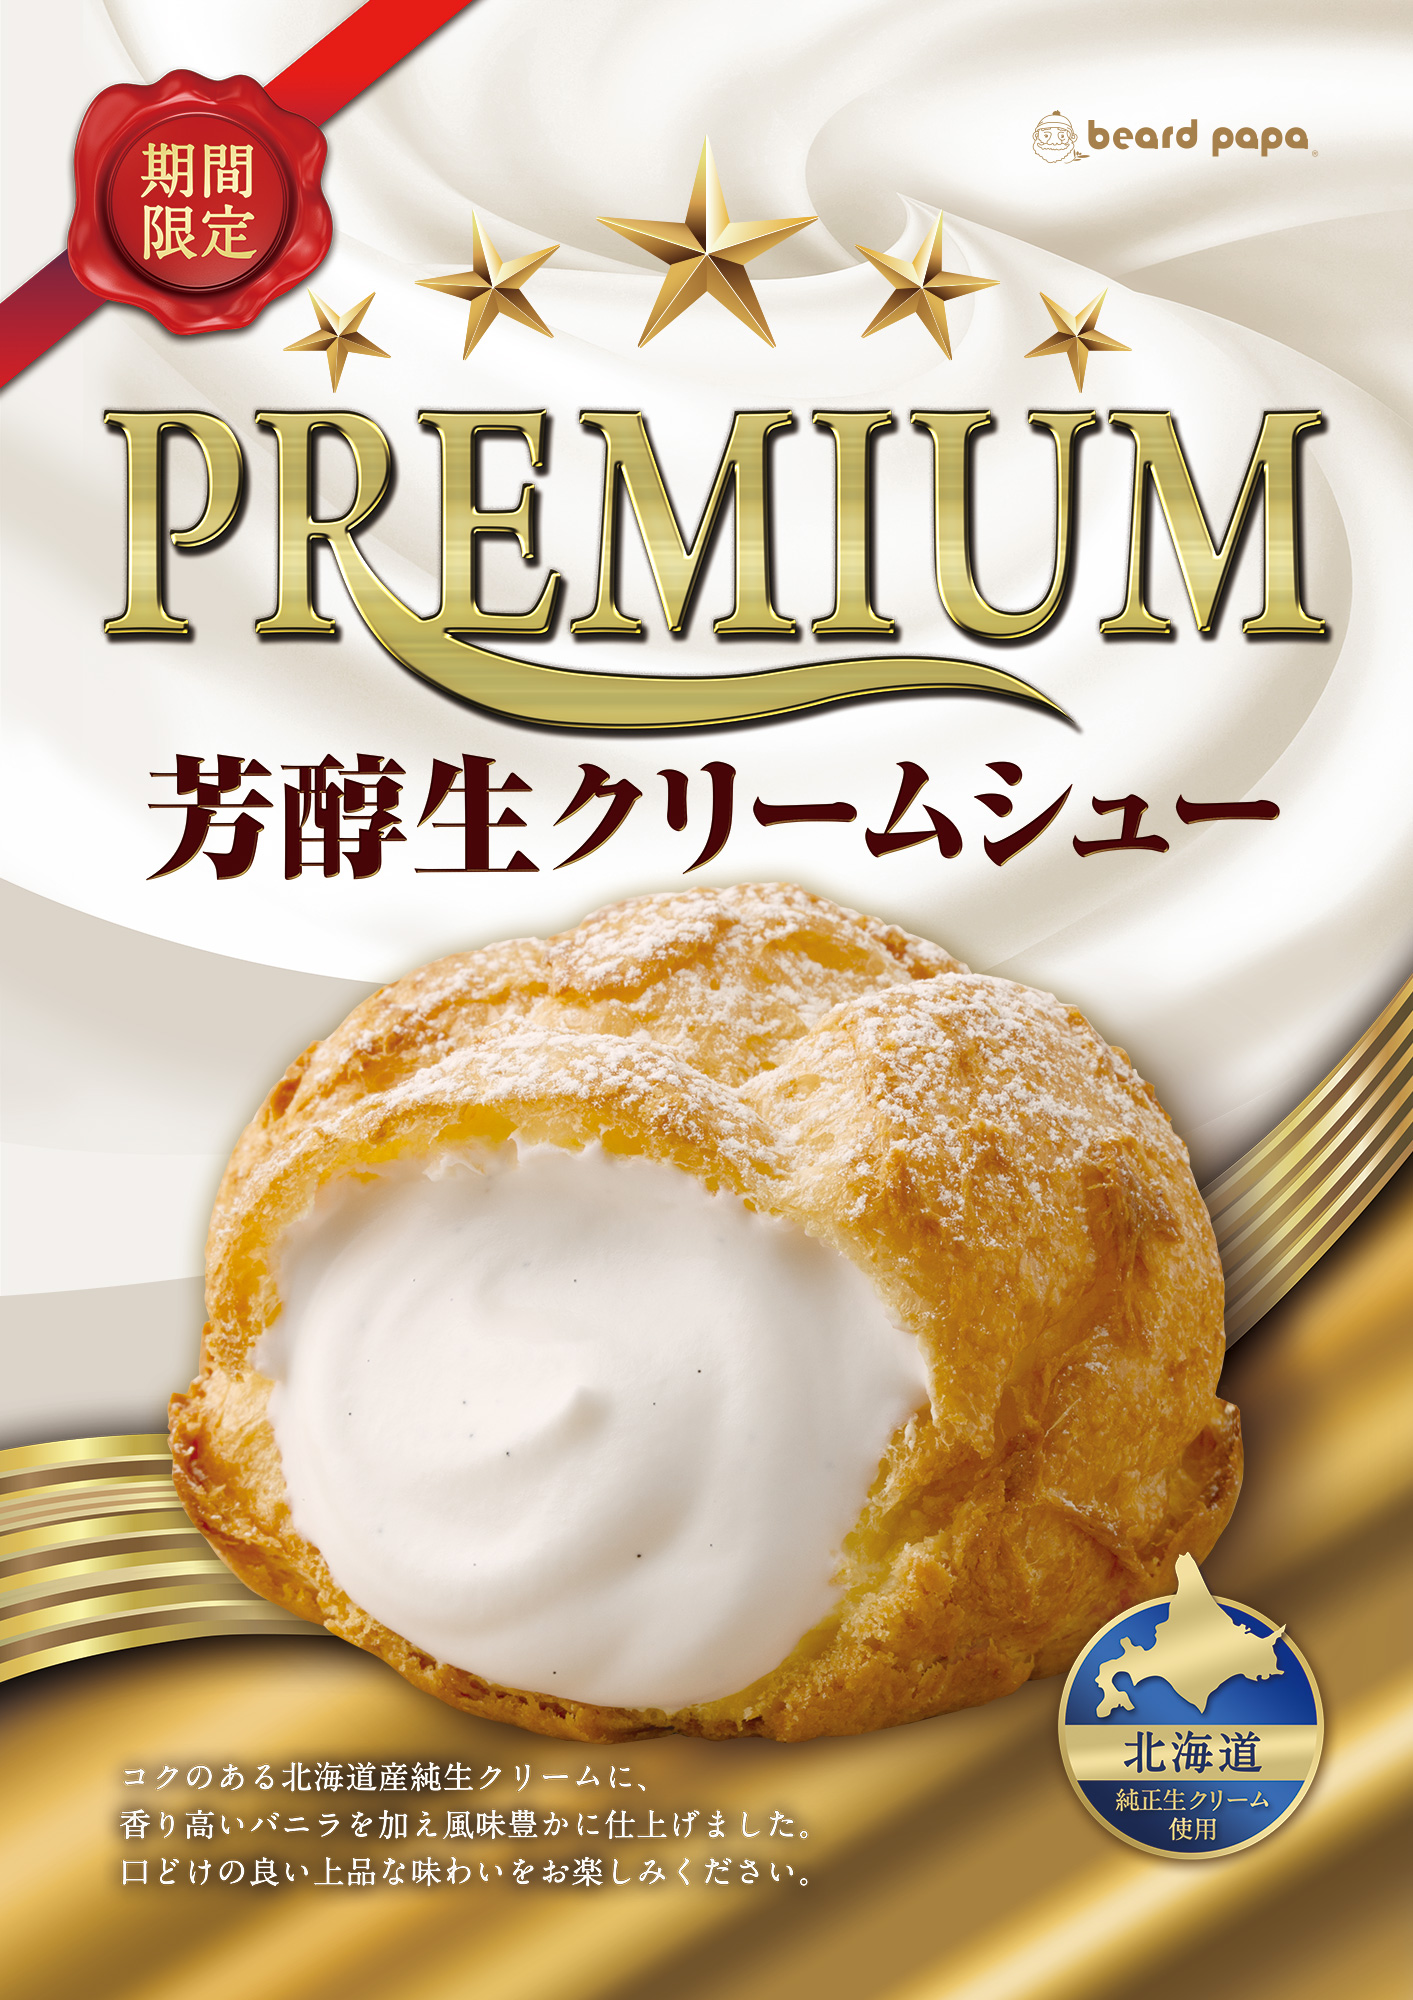 ビアードパパ 北海道産純生クリームを使用し 口どけの良い上品な味わいのシュークリーム Premium芳醇生クリーム シュー を今年も発売 株式会社麦の穂のプレスリリース